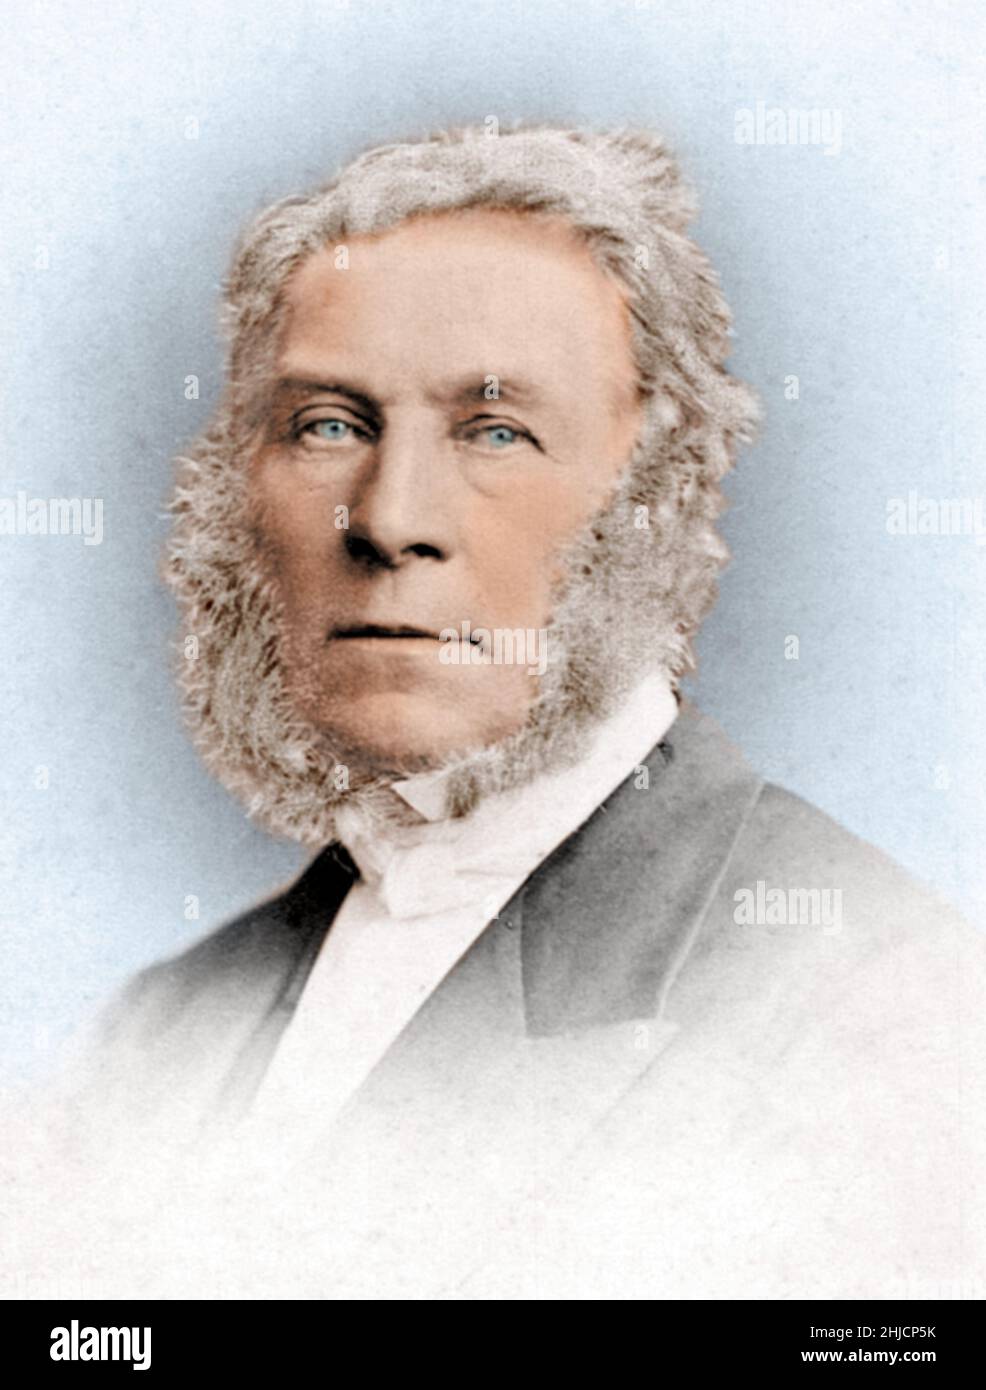 James Glaisher (1809-1903) était un météorologue, un aéronautique et un astronome anglais.On se souviendra mieux de lui comme d'un ballon pionnier.Son ascension le 5 septembre 1862 a battu le record mondial de l'altitude, mais il est passé autour de 8 800 mètres avant qu'une lecture puisse être prise.Colorisé. Banque D'Images